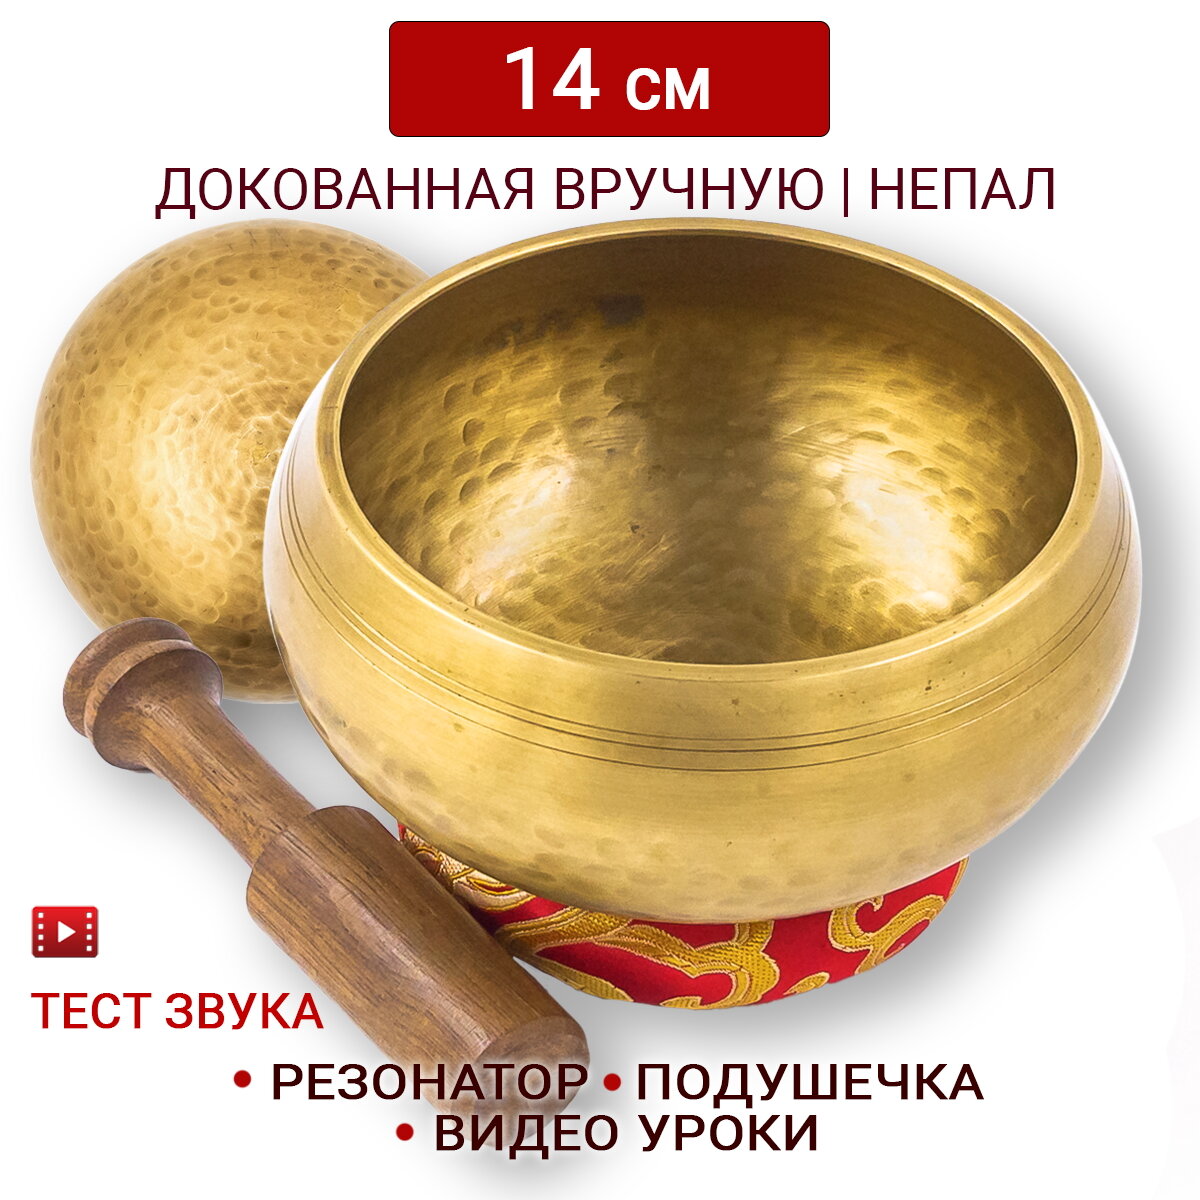 Healingbowl / Тибетская поющая чаша полукованая для медитации 14 см / Непал / в комплекте чаша, стик, кольцо подставка красная